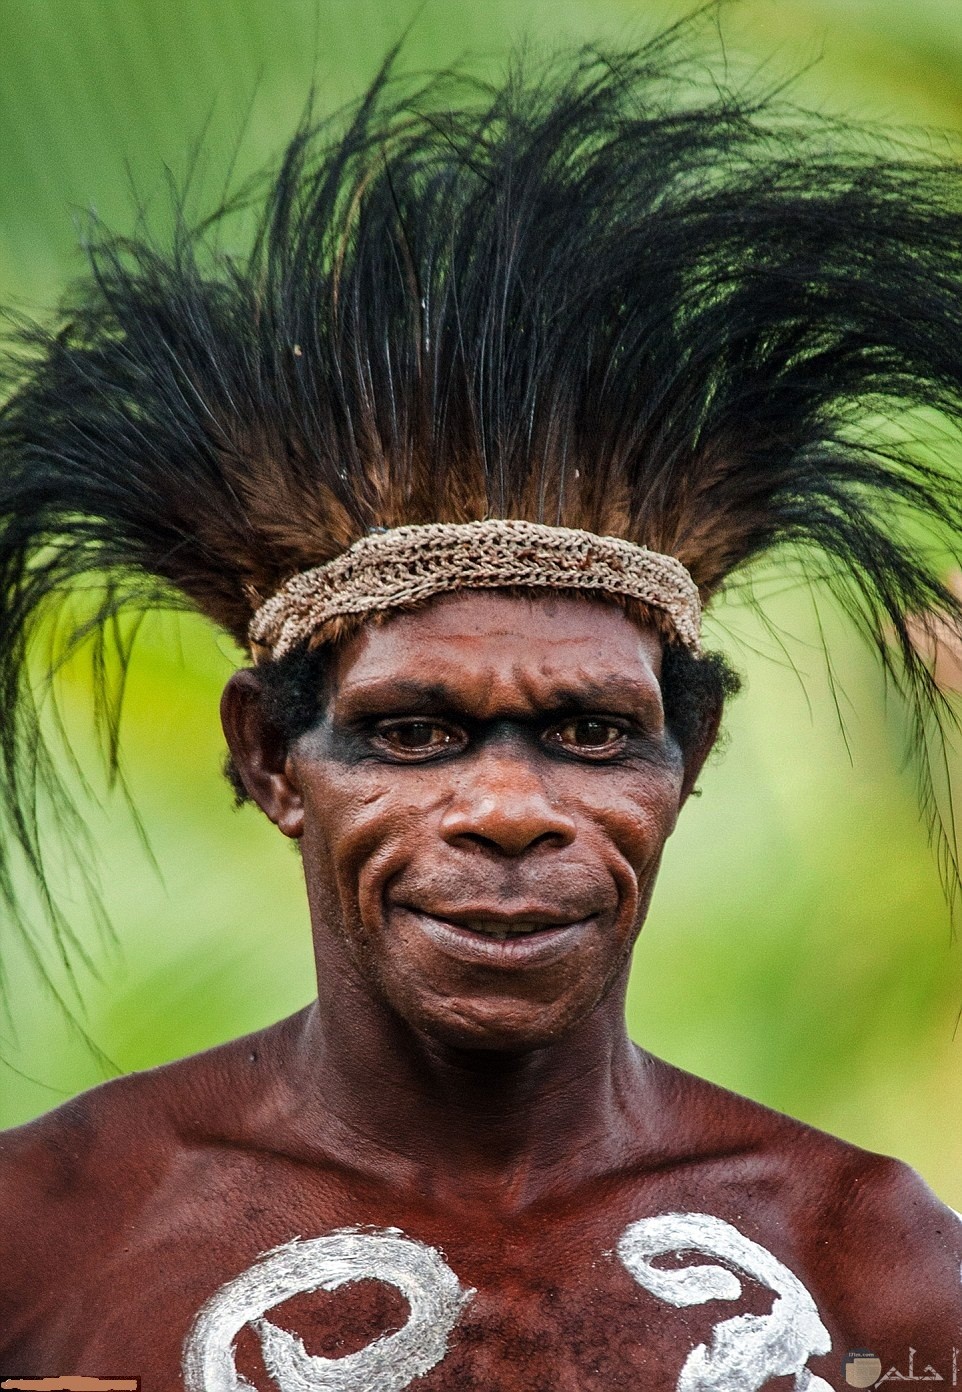 وجوه افريقية مخيفة لإحدى القبائل بالغابات الاستوائية.